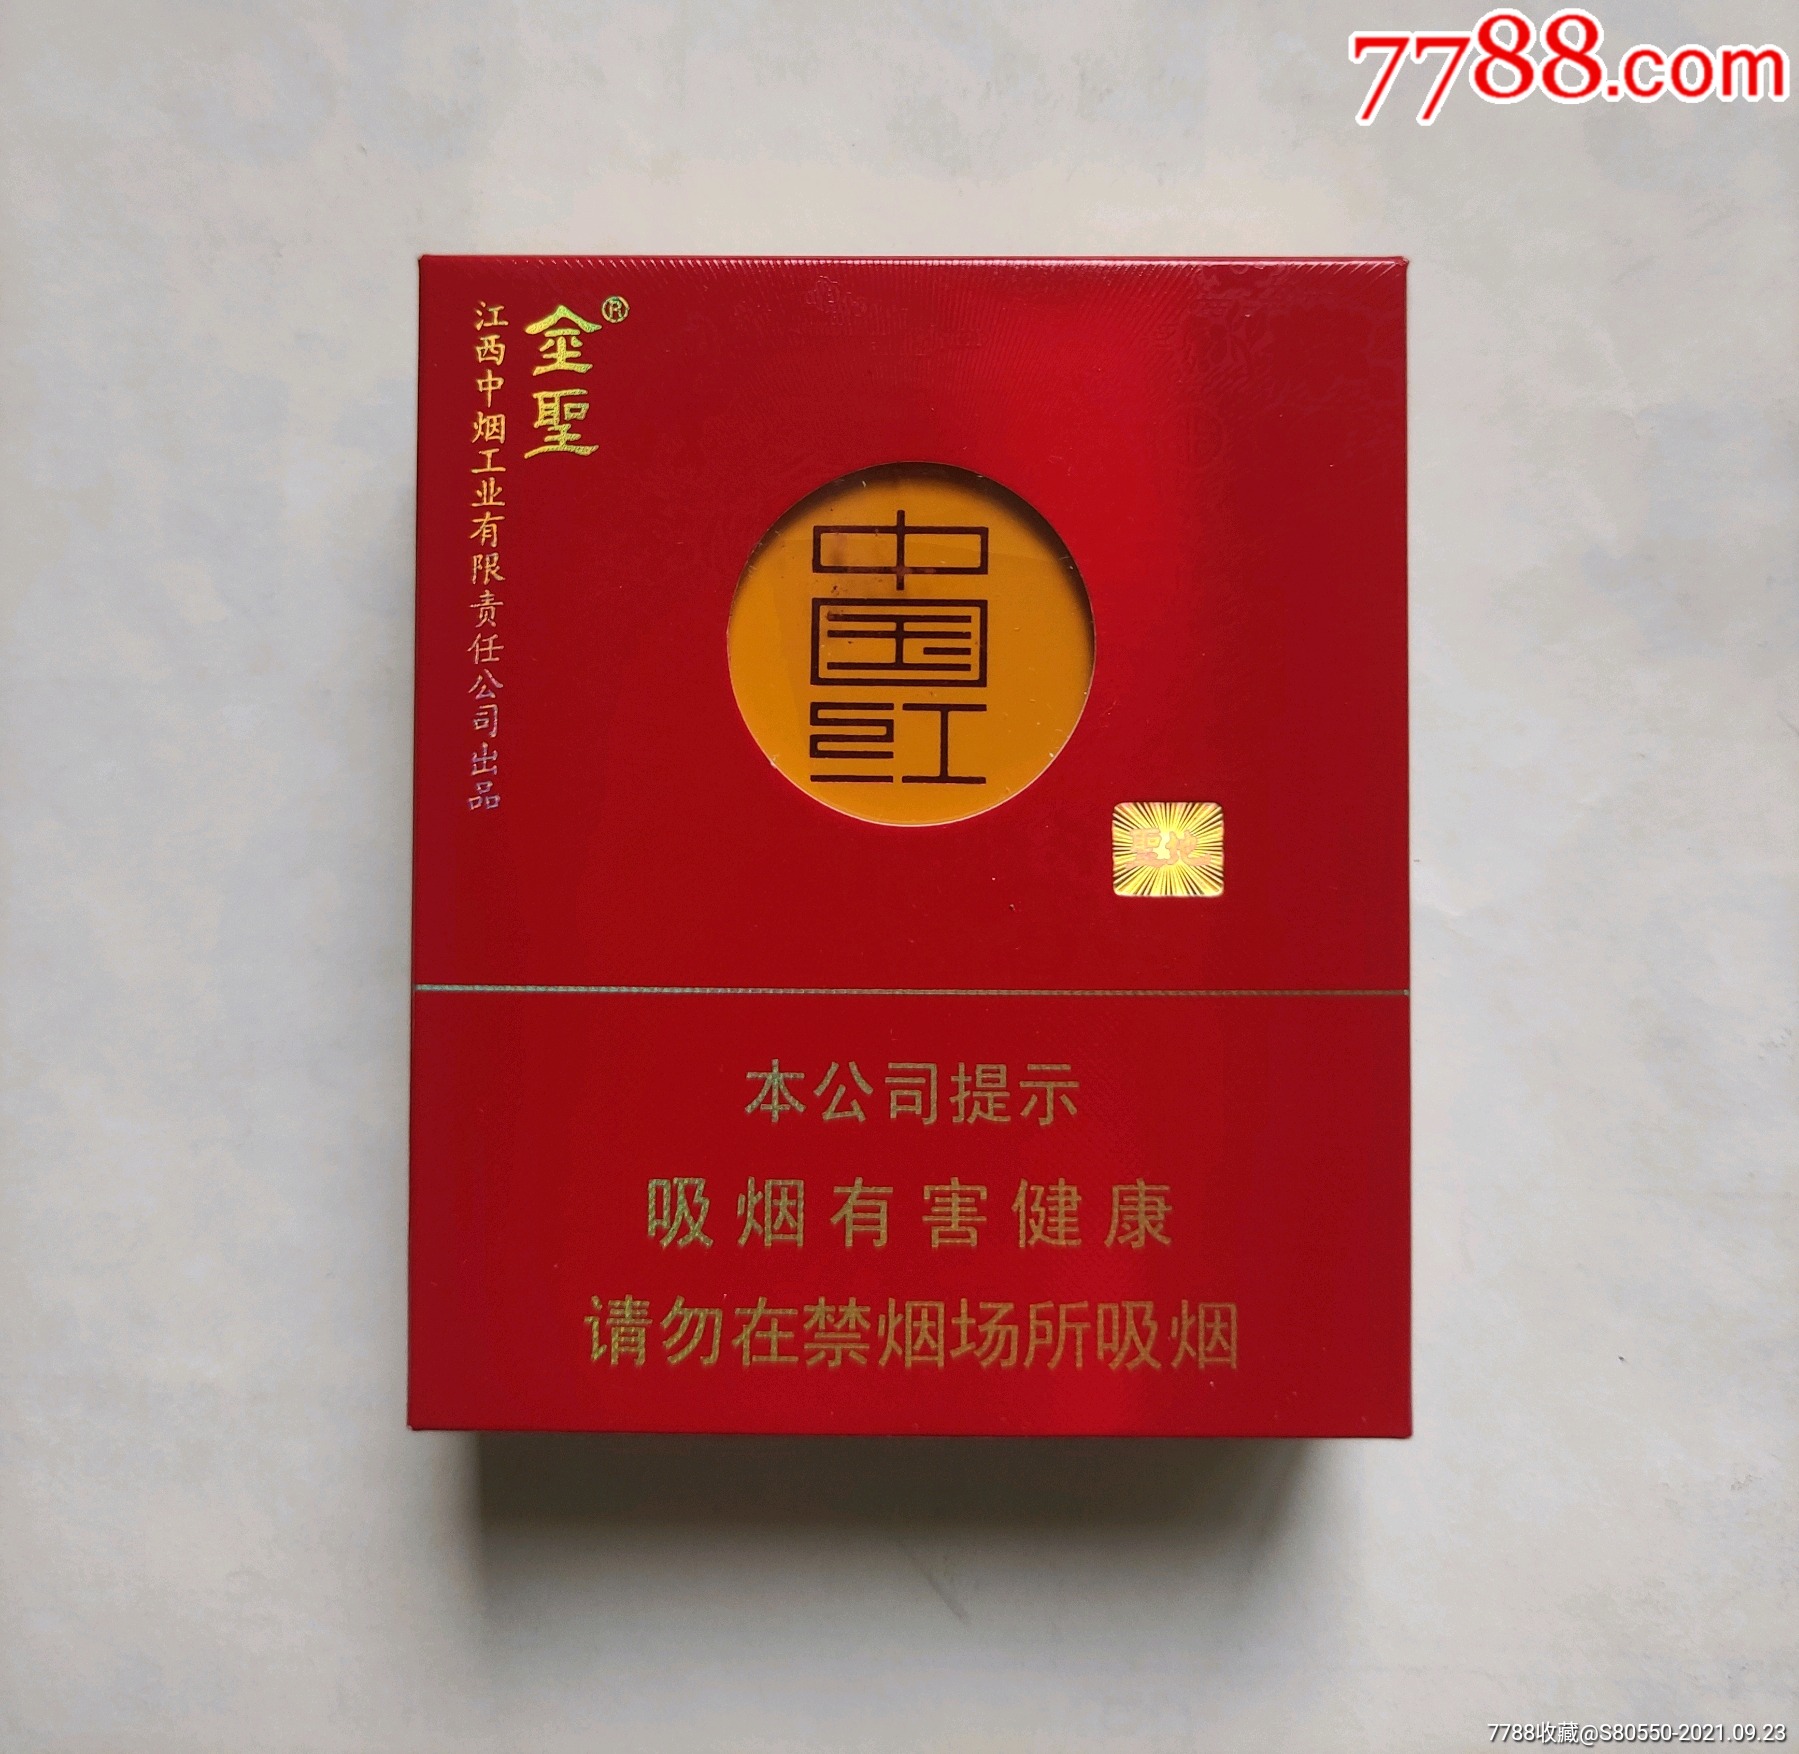 金圣中国红16支装价格图片